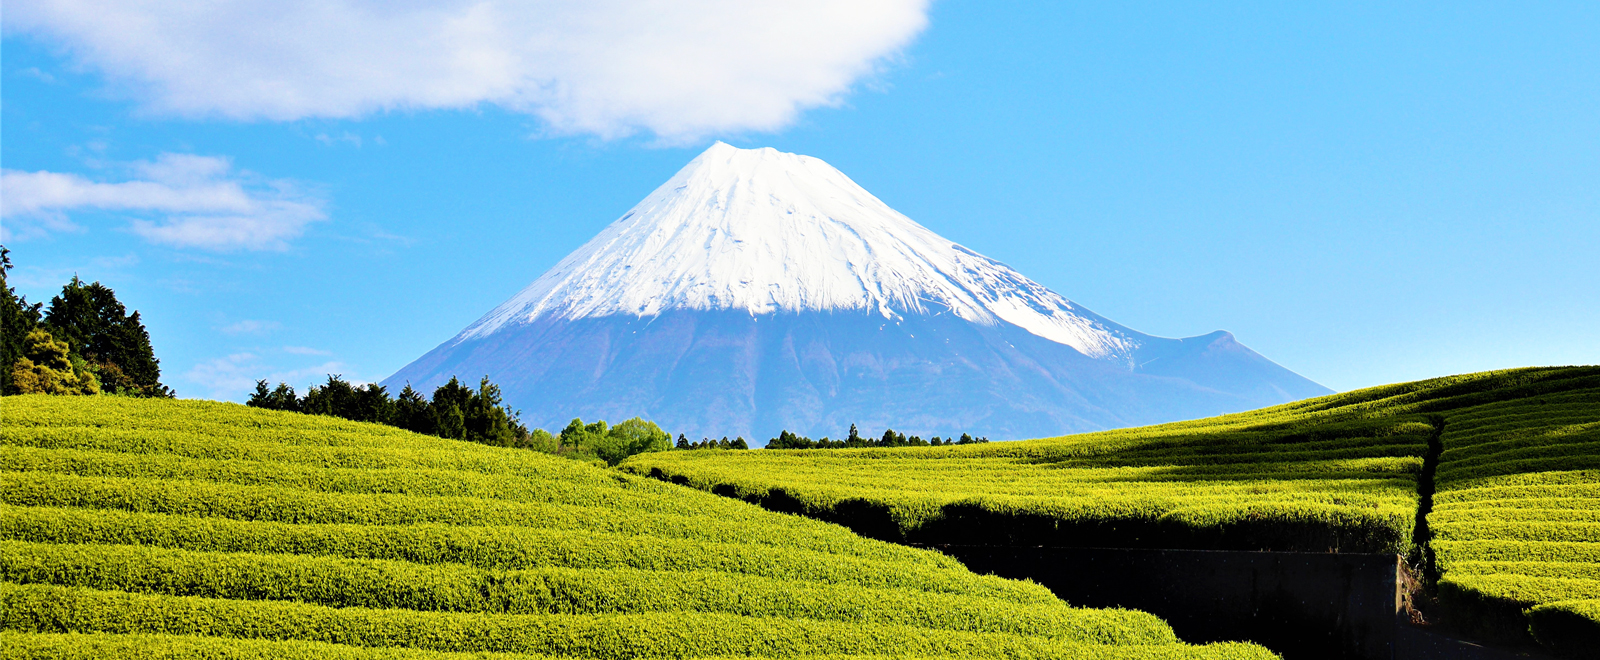 富士山笹場のイメージ